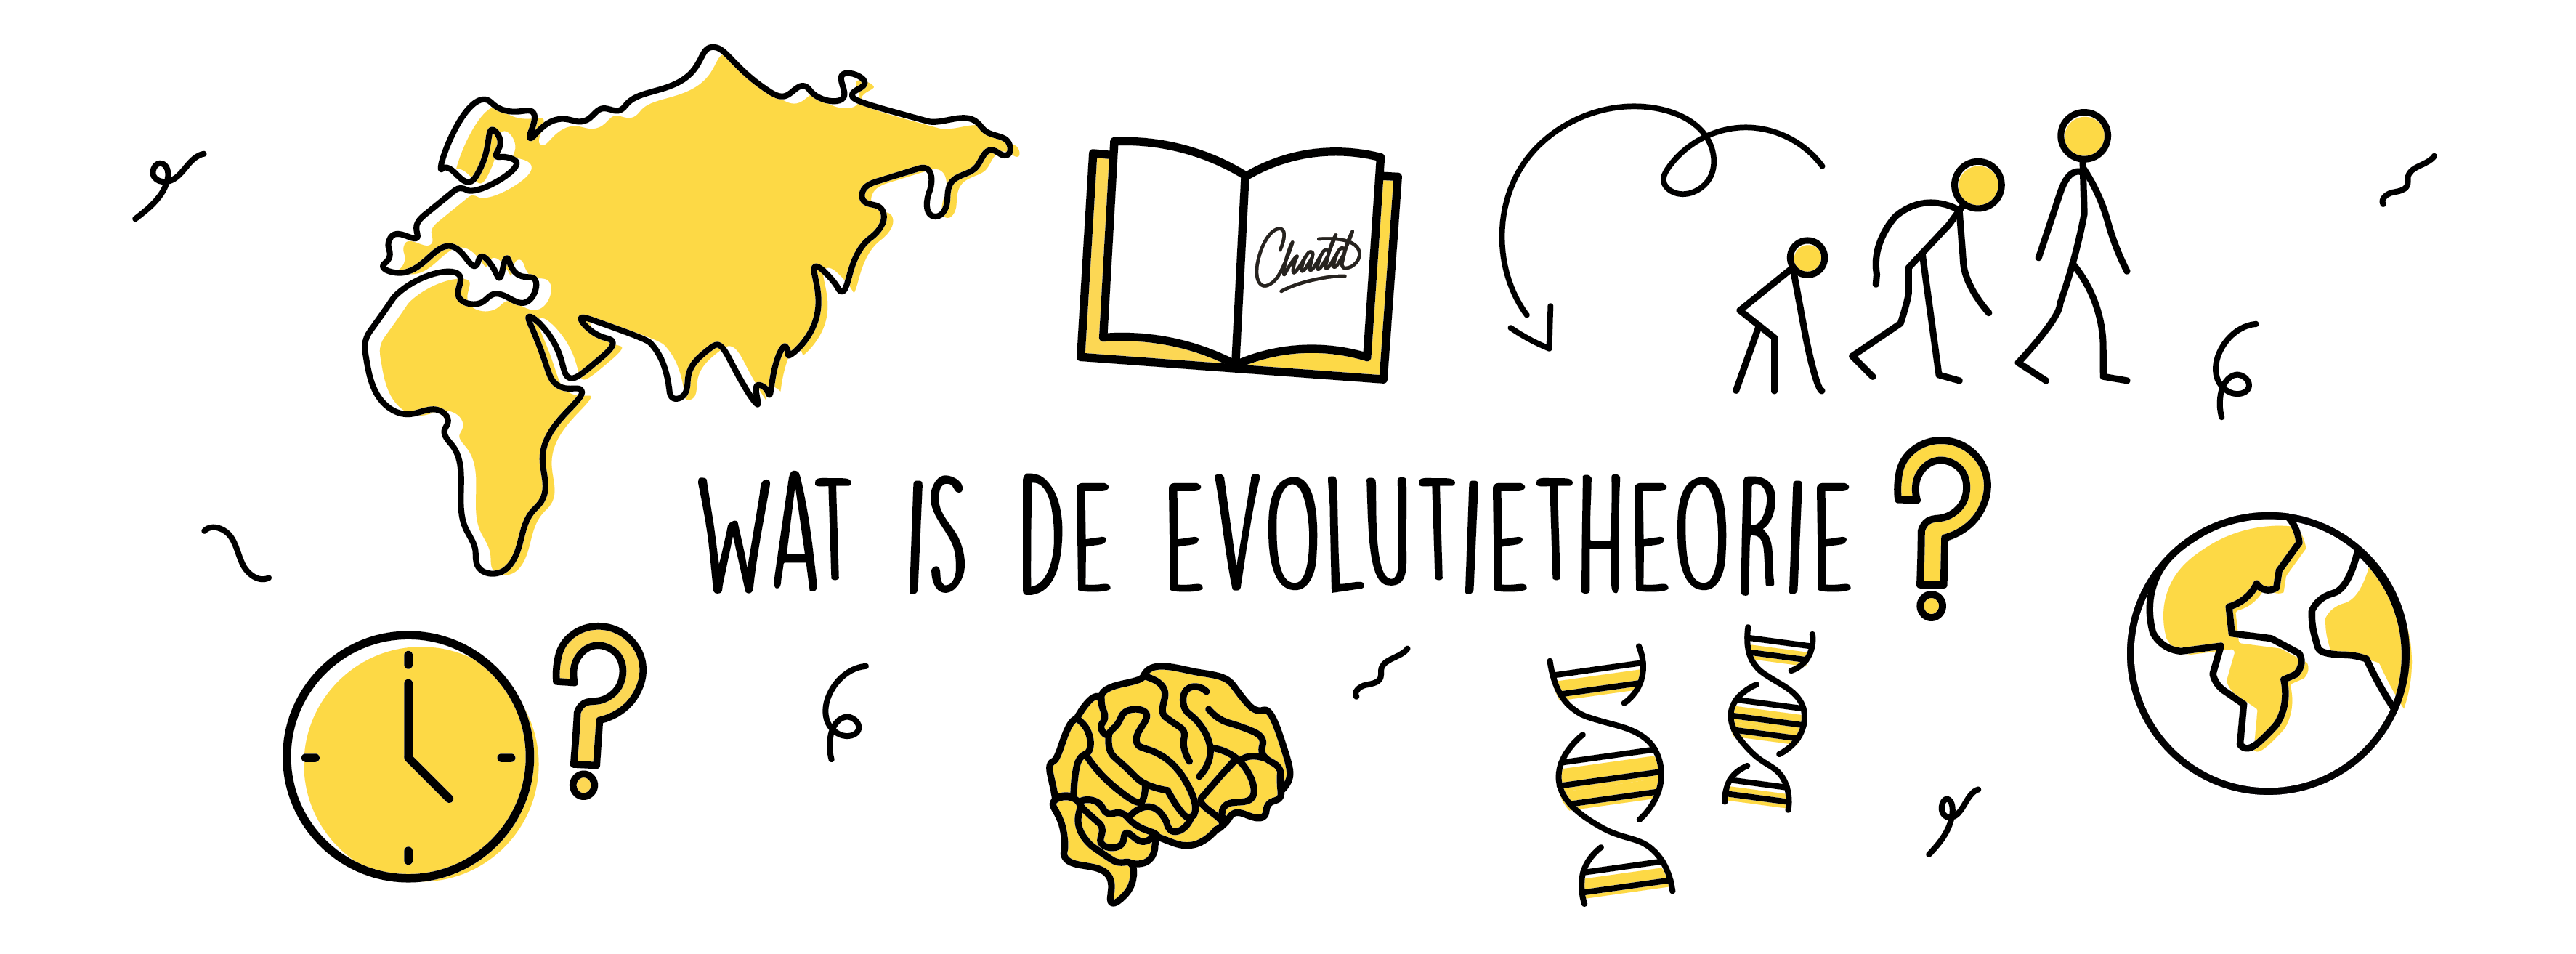 Evolutie en evolutietheorie: wat is het?